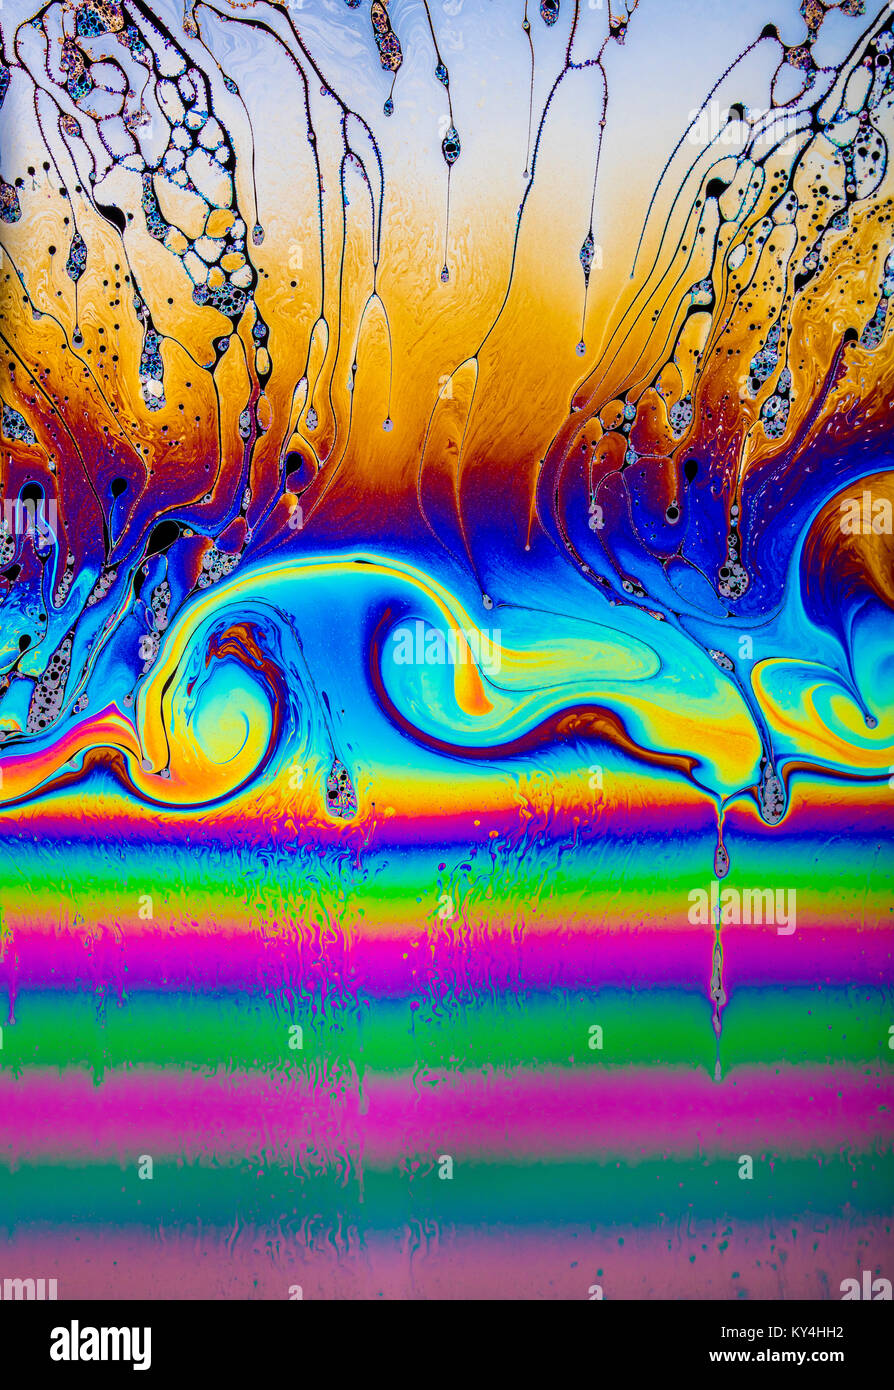 Los patrones de interferencia de película delgada de óptica en una solución de jabón estirada demostrando multi-color psicodélico, educativas y efectos artísticos Foto de stock